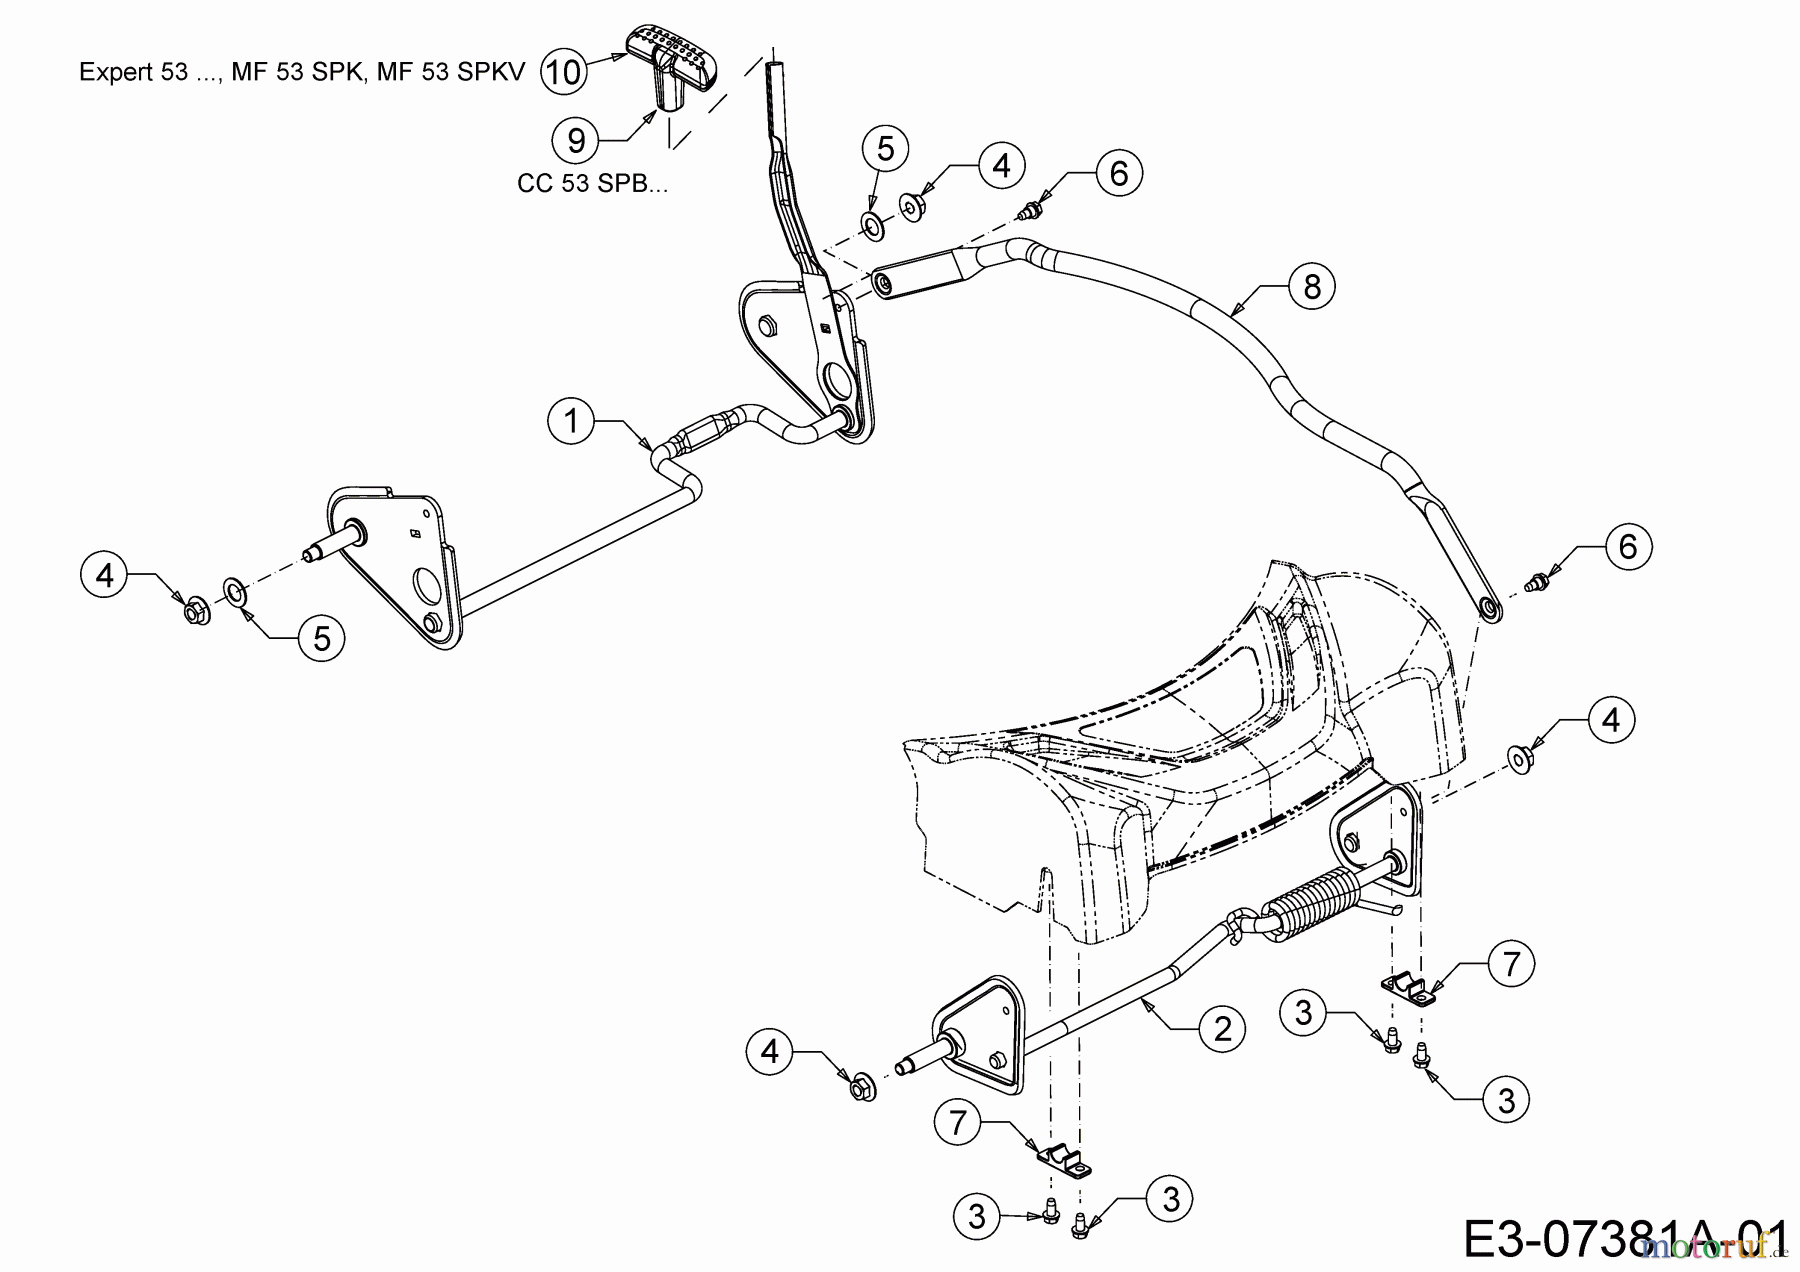  Wolf-Garten Petrol mower self propelled Expert 53 BA V 12BVQ56K650  (2014) Axles, Height adjustment